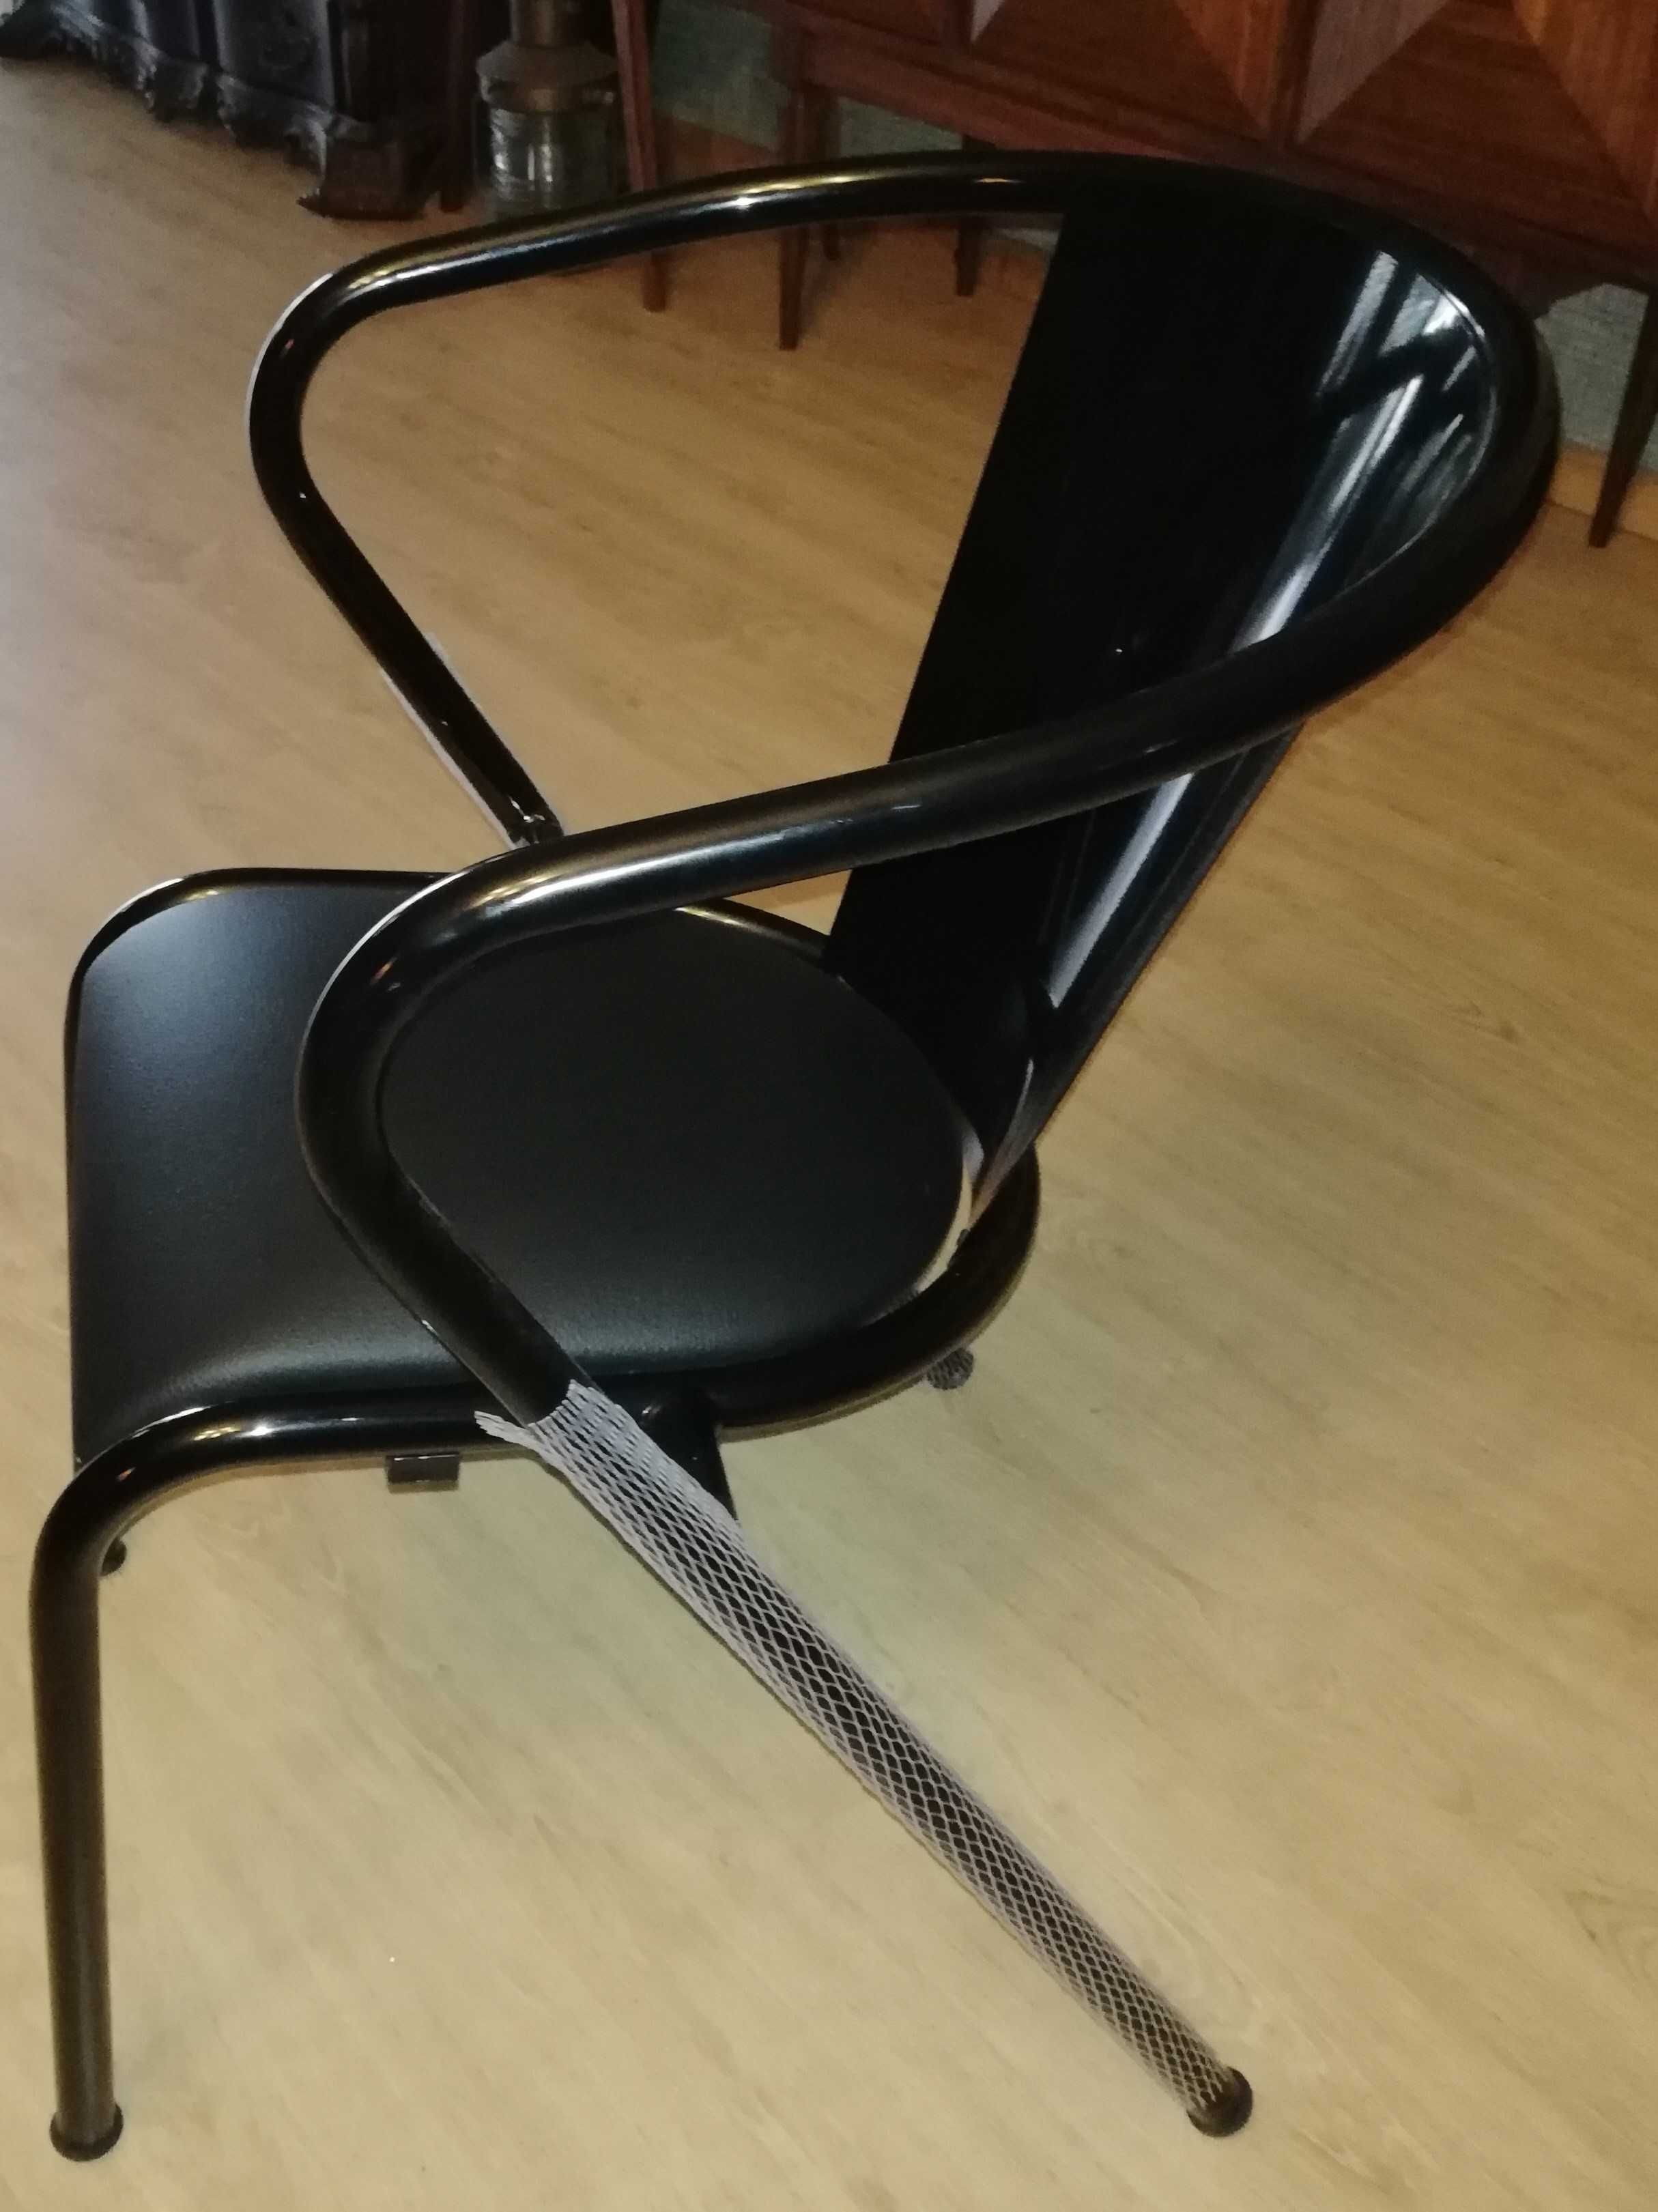 Cadeiras “Gonçalo” – Arcalo, Portugal